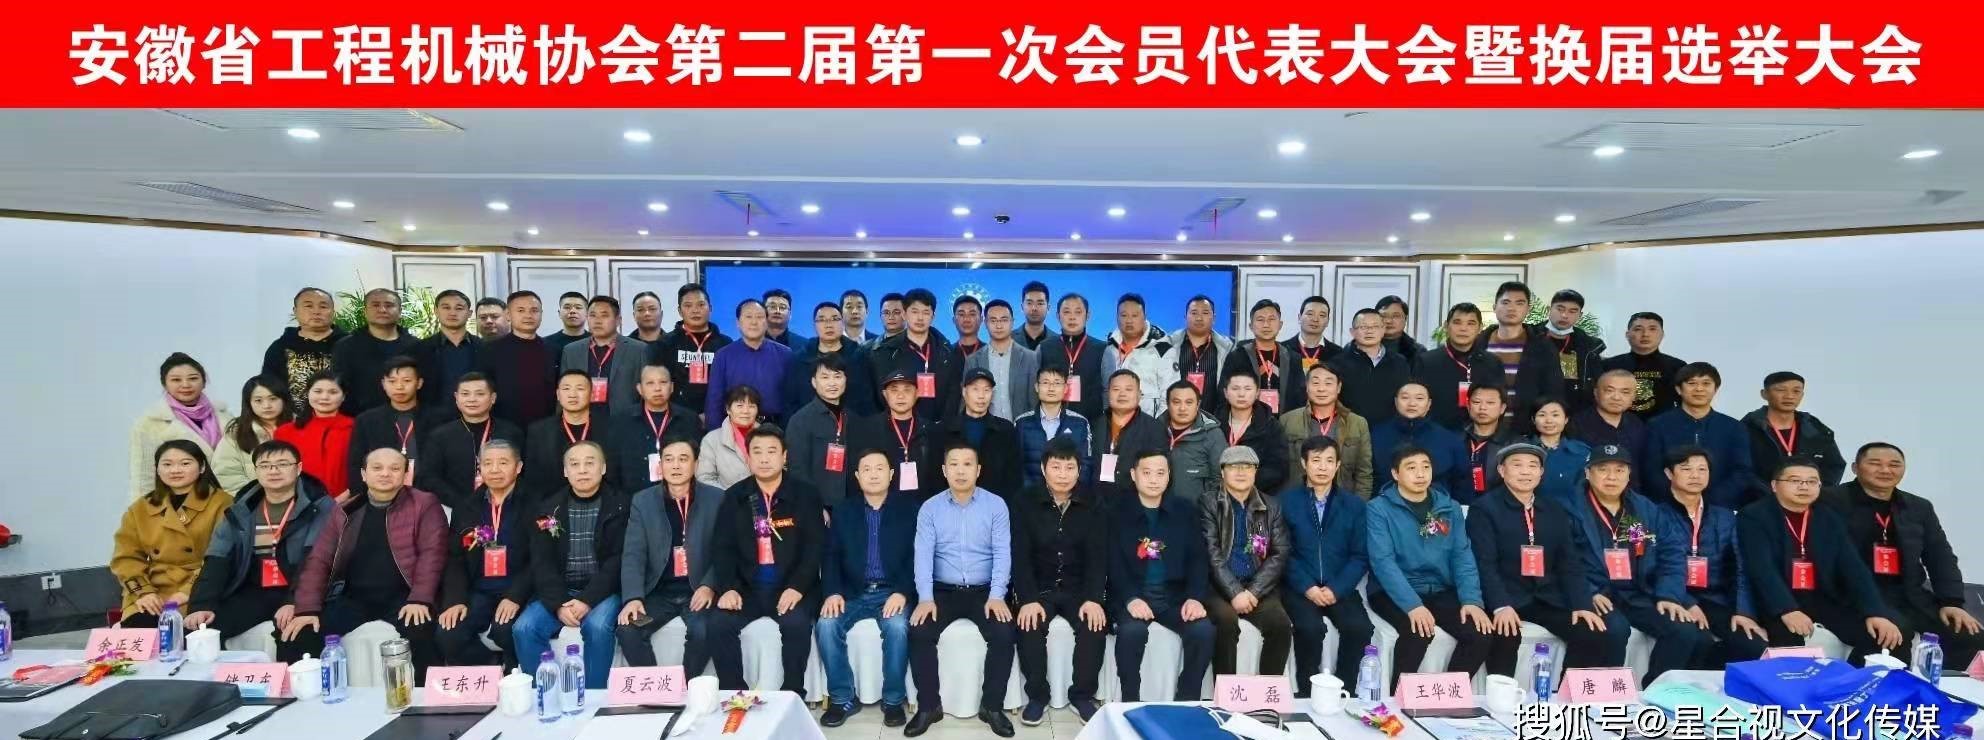 安徽省工程机械协会第二届第一次会员大会暨换届选举大会在合肥召